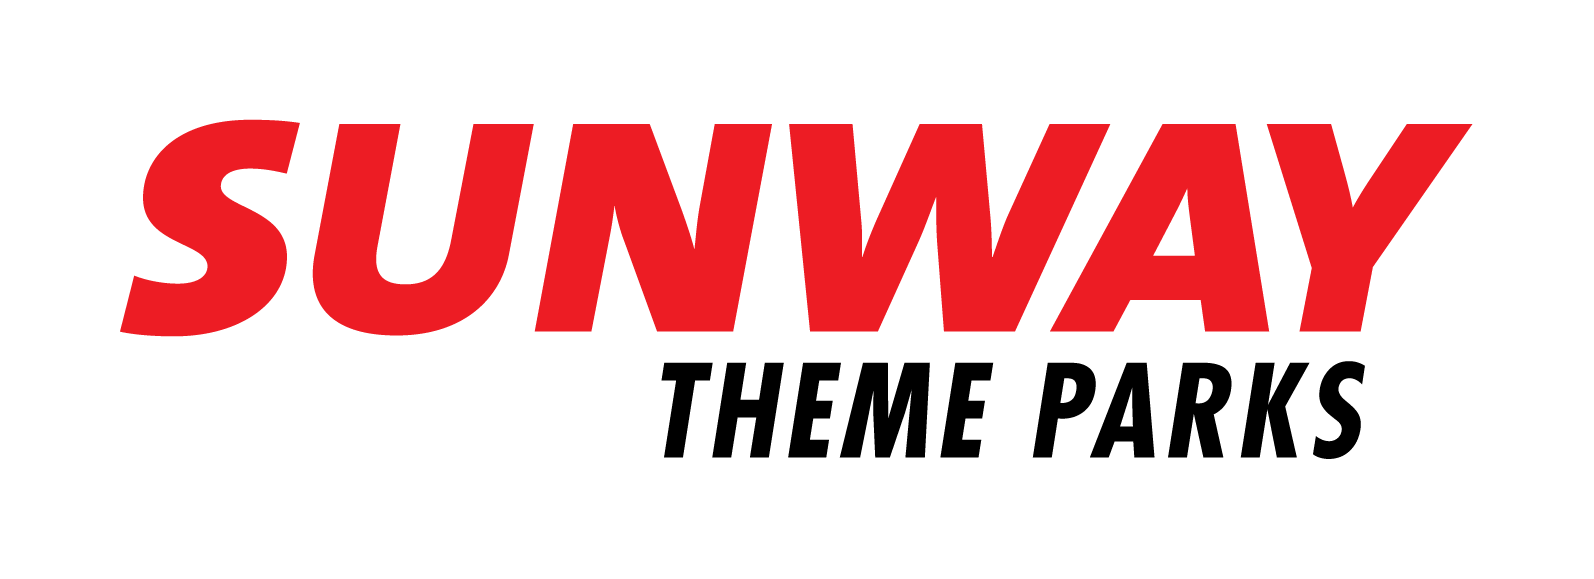 Sunway group. Kenda логотип. Шины Кенда лого. Kenda резина мотоциклетная лого. Санвей шины.